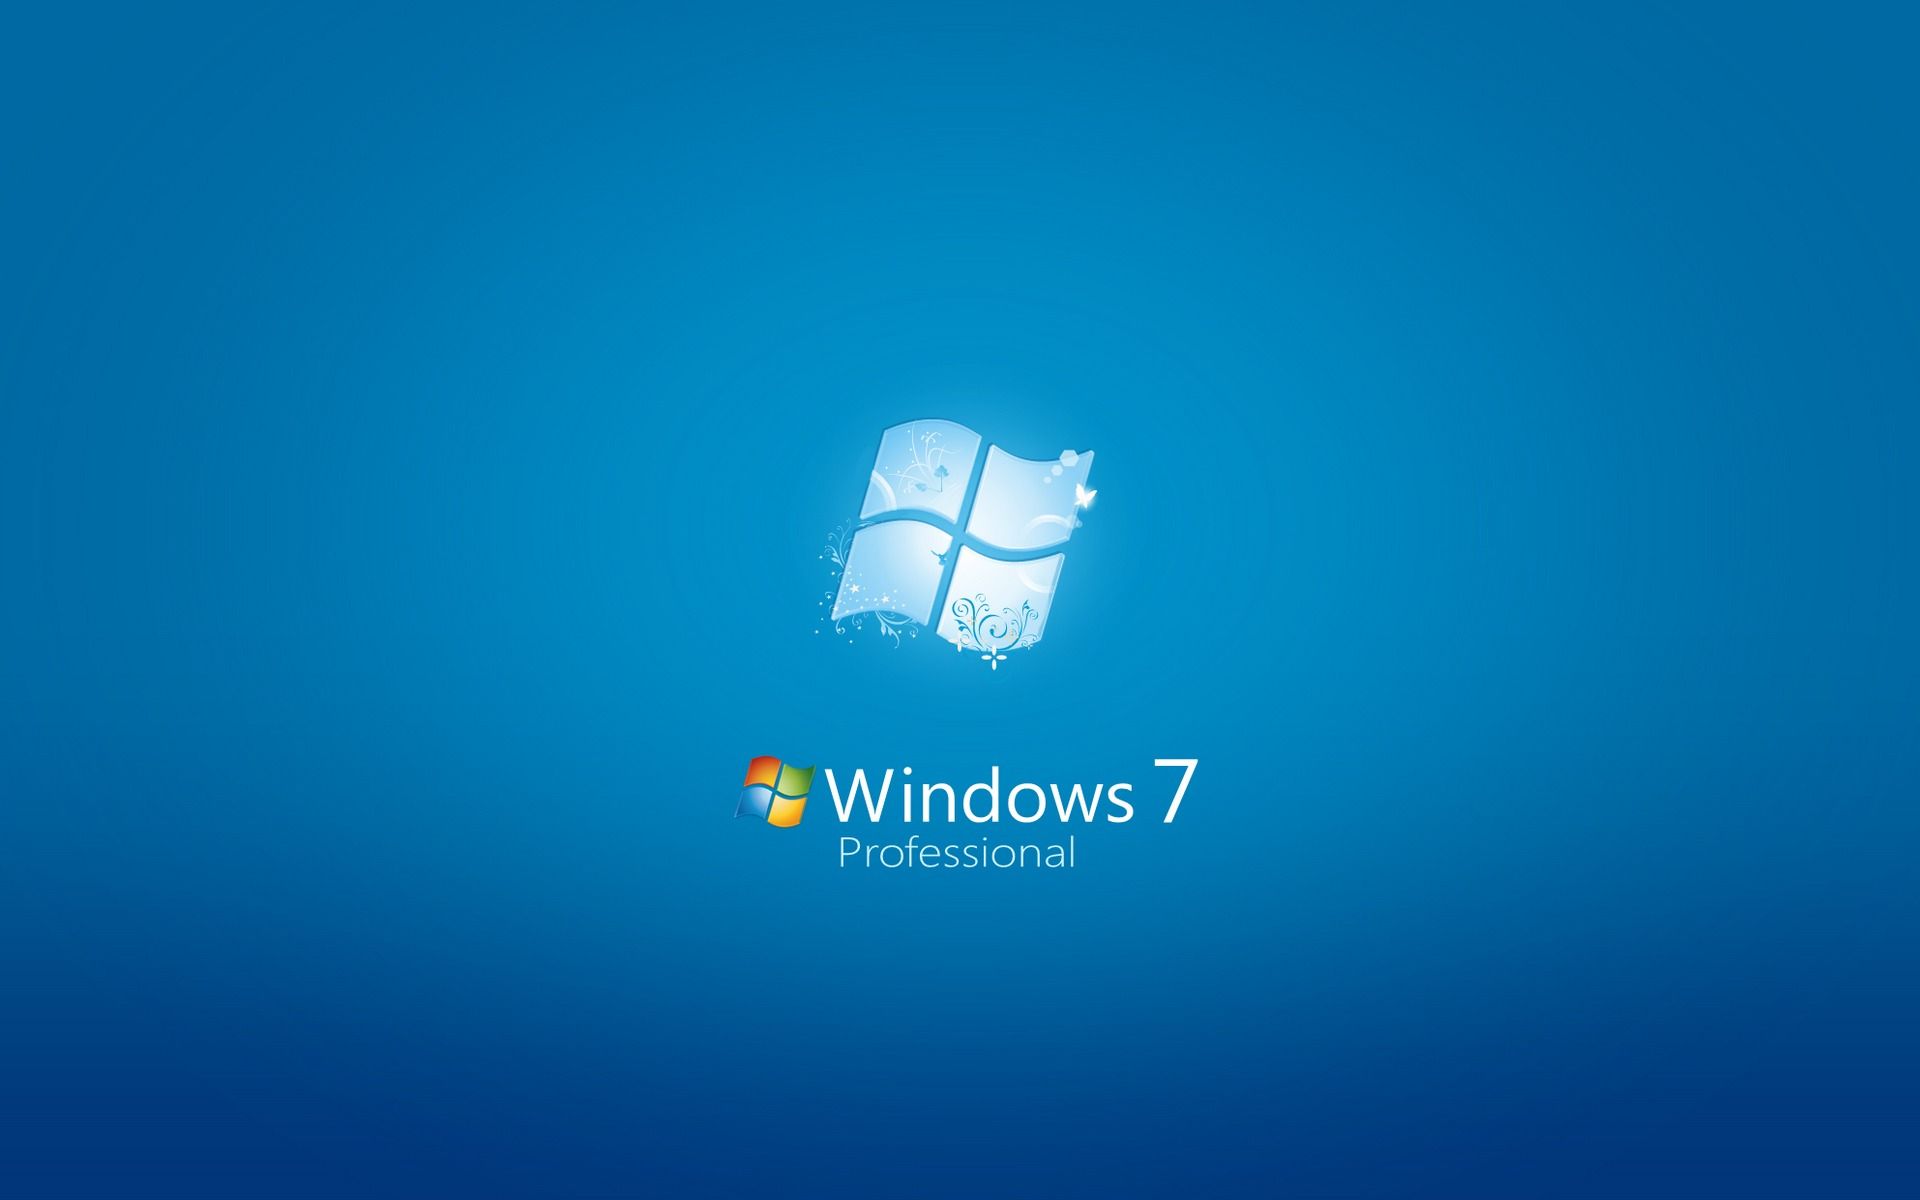 Đổi hình nền Windows 7 Starter: “Windows 7 Starter có tính năng đổi hình nền tuyệt vời. Bạn sẽ không bị giới hạn trong việc thay đổi hình nền, mà có thể tự do chọn những hình ảnh yêu thích của mình để làm hình nền desktop.”